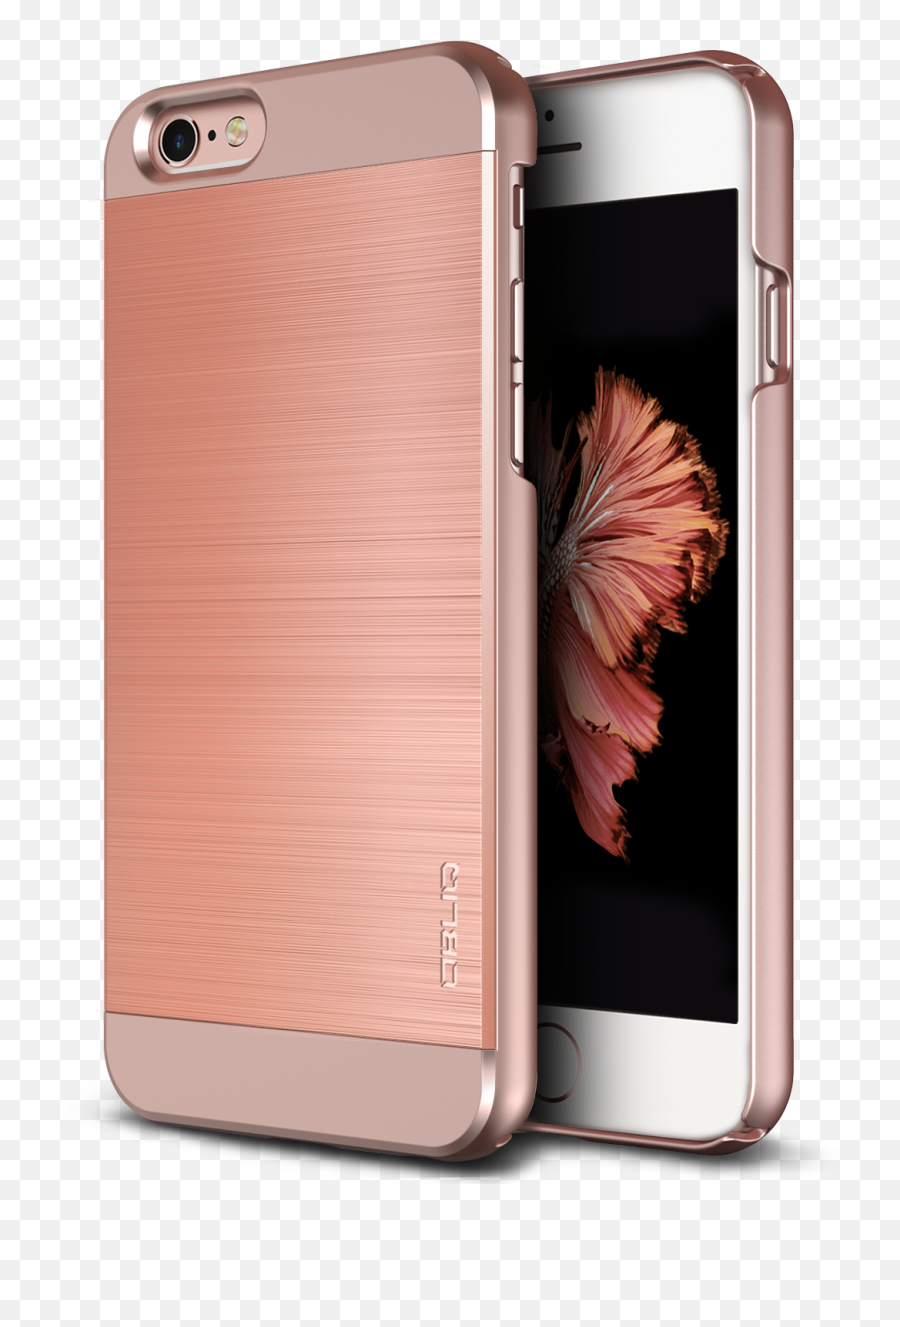 Download Hd Obliq Iphone 6s Case Slim - Iphone 6s Rose Gold Cases Emoji,Iphone 6s Emoji Case